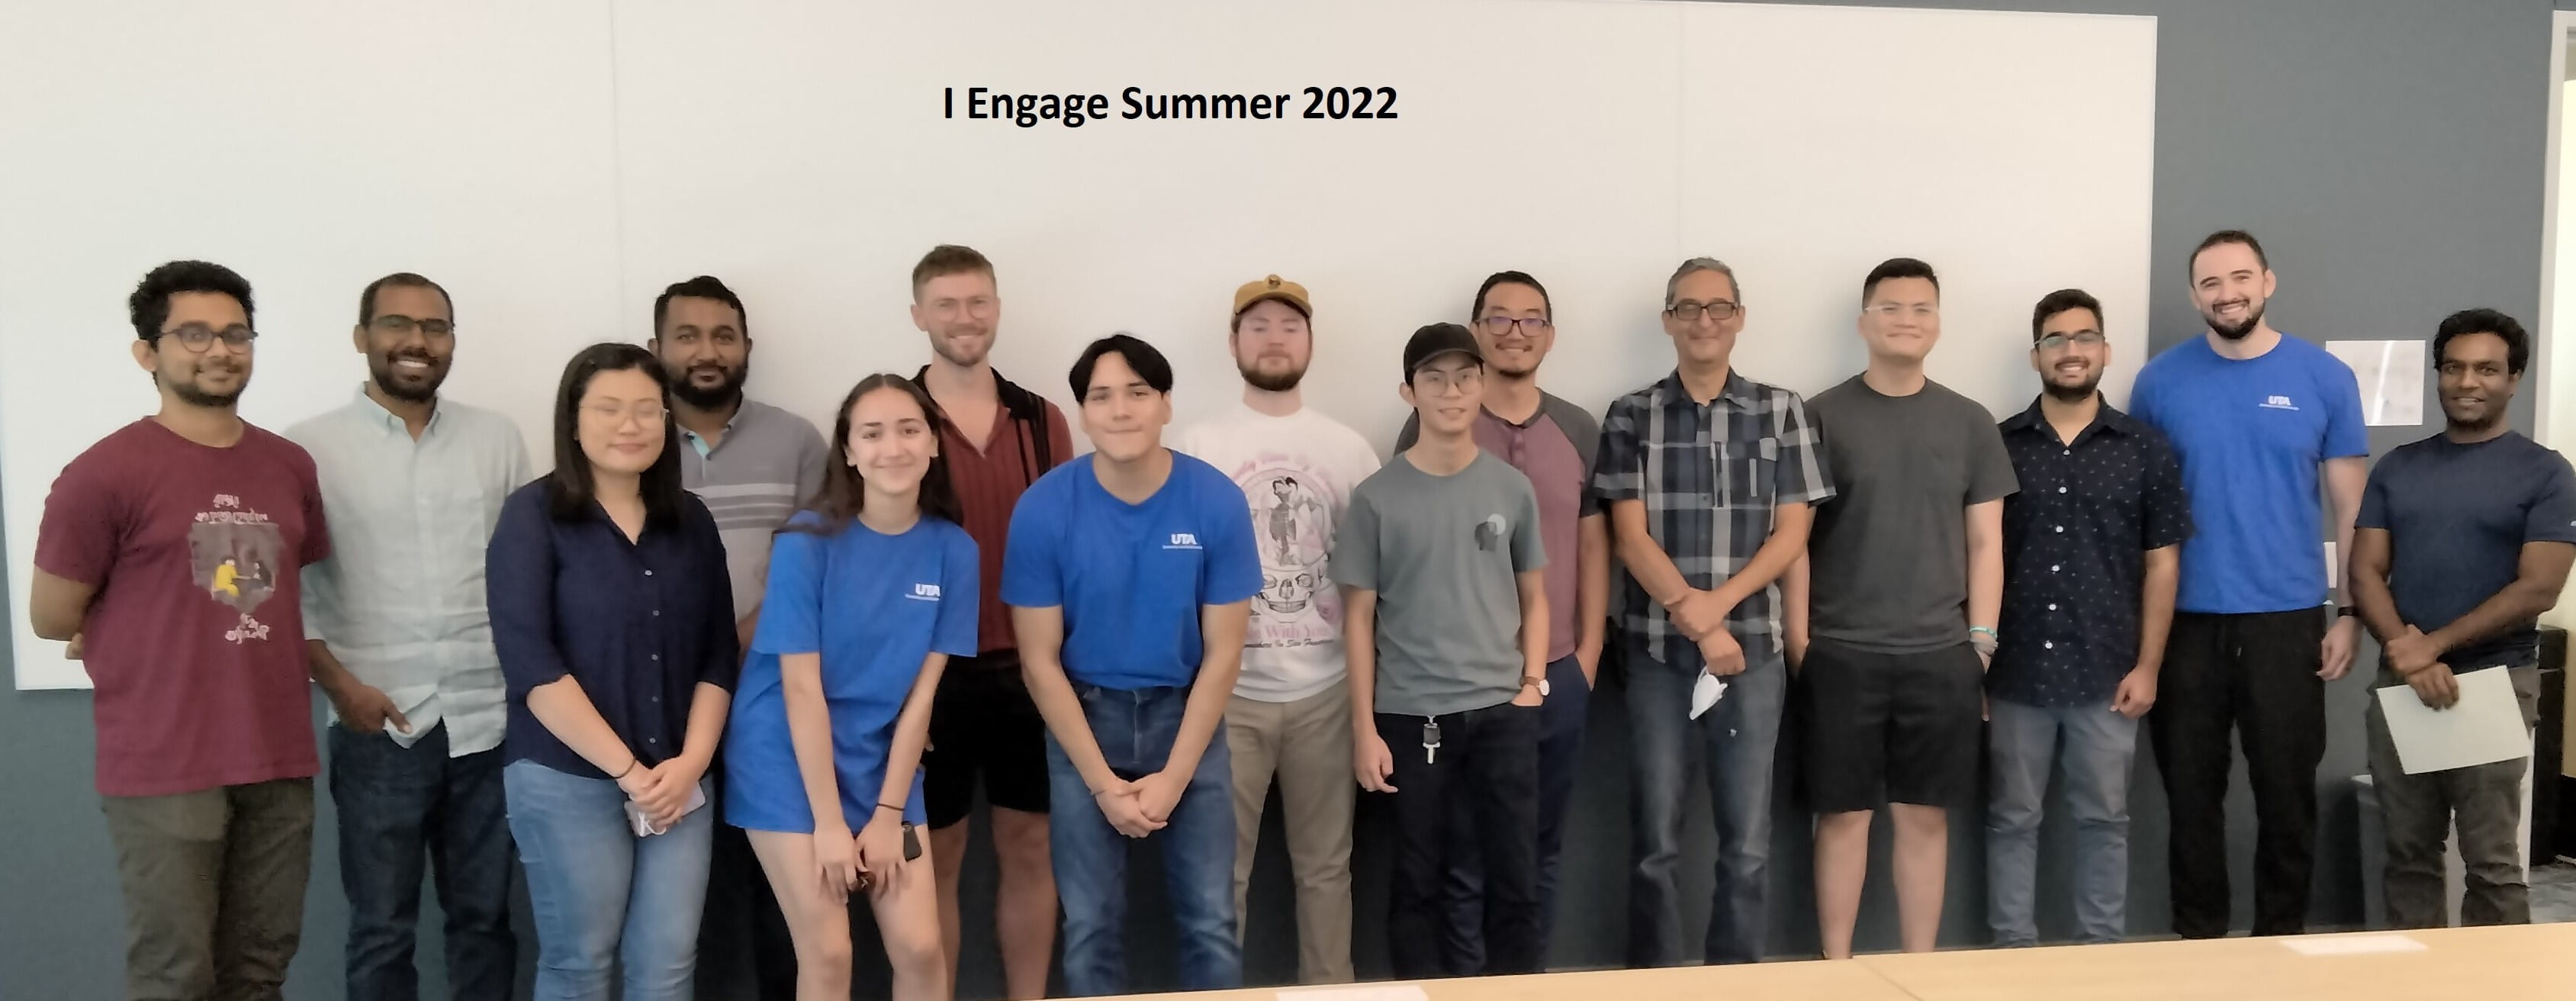 Group photo of the Summer 2022 I Engage Cohort